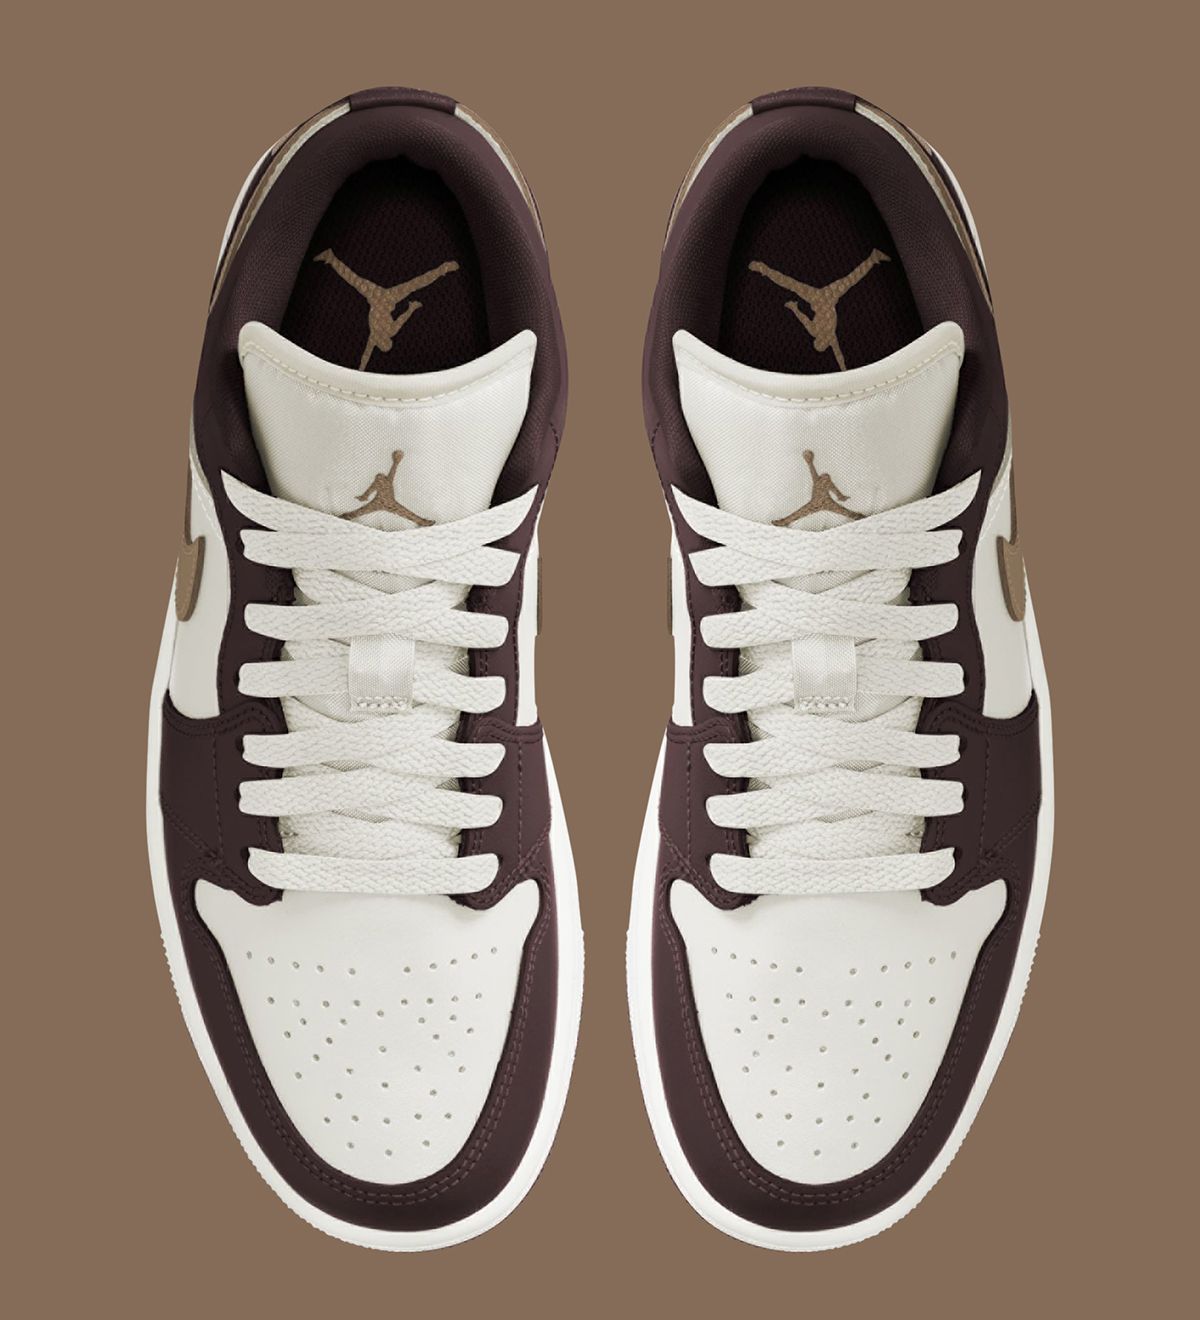 First Looks // Air Jordan 1 Low 